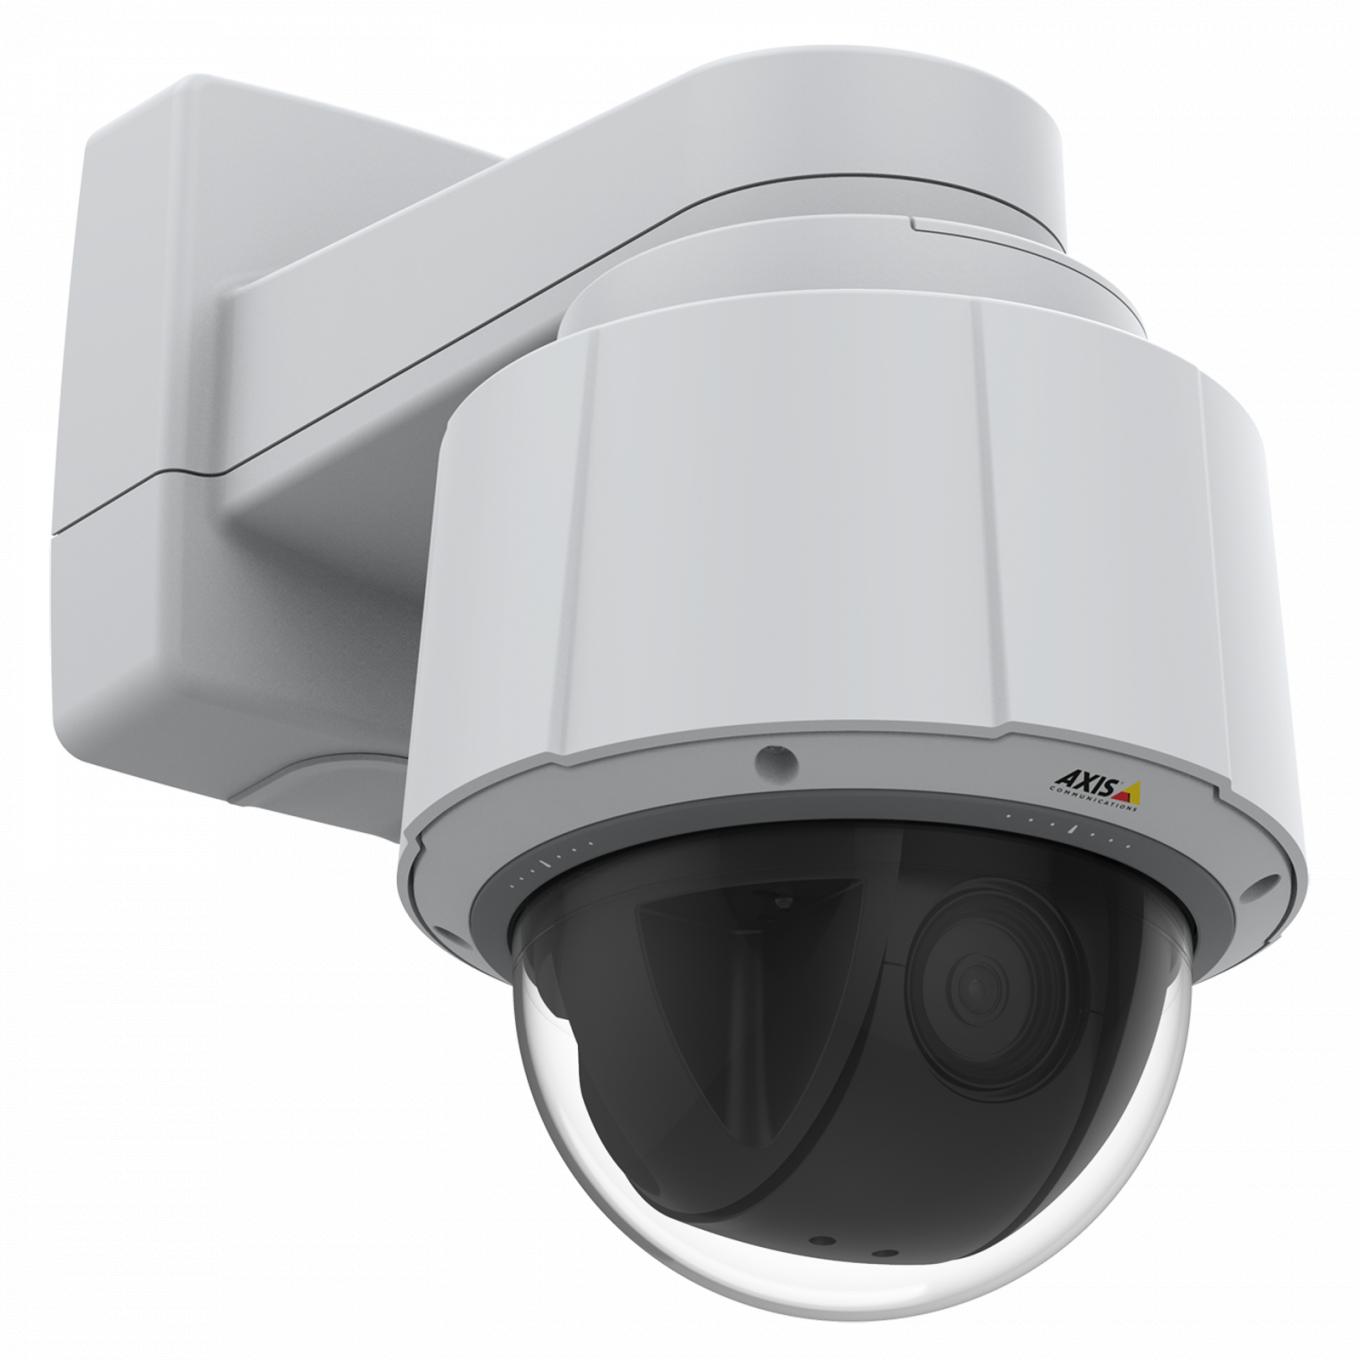 Axis IP Camera Q6075는 HDTV 720p 및 30배 광학 줌을 갖춘 실내 PTZ를 제공합니다.